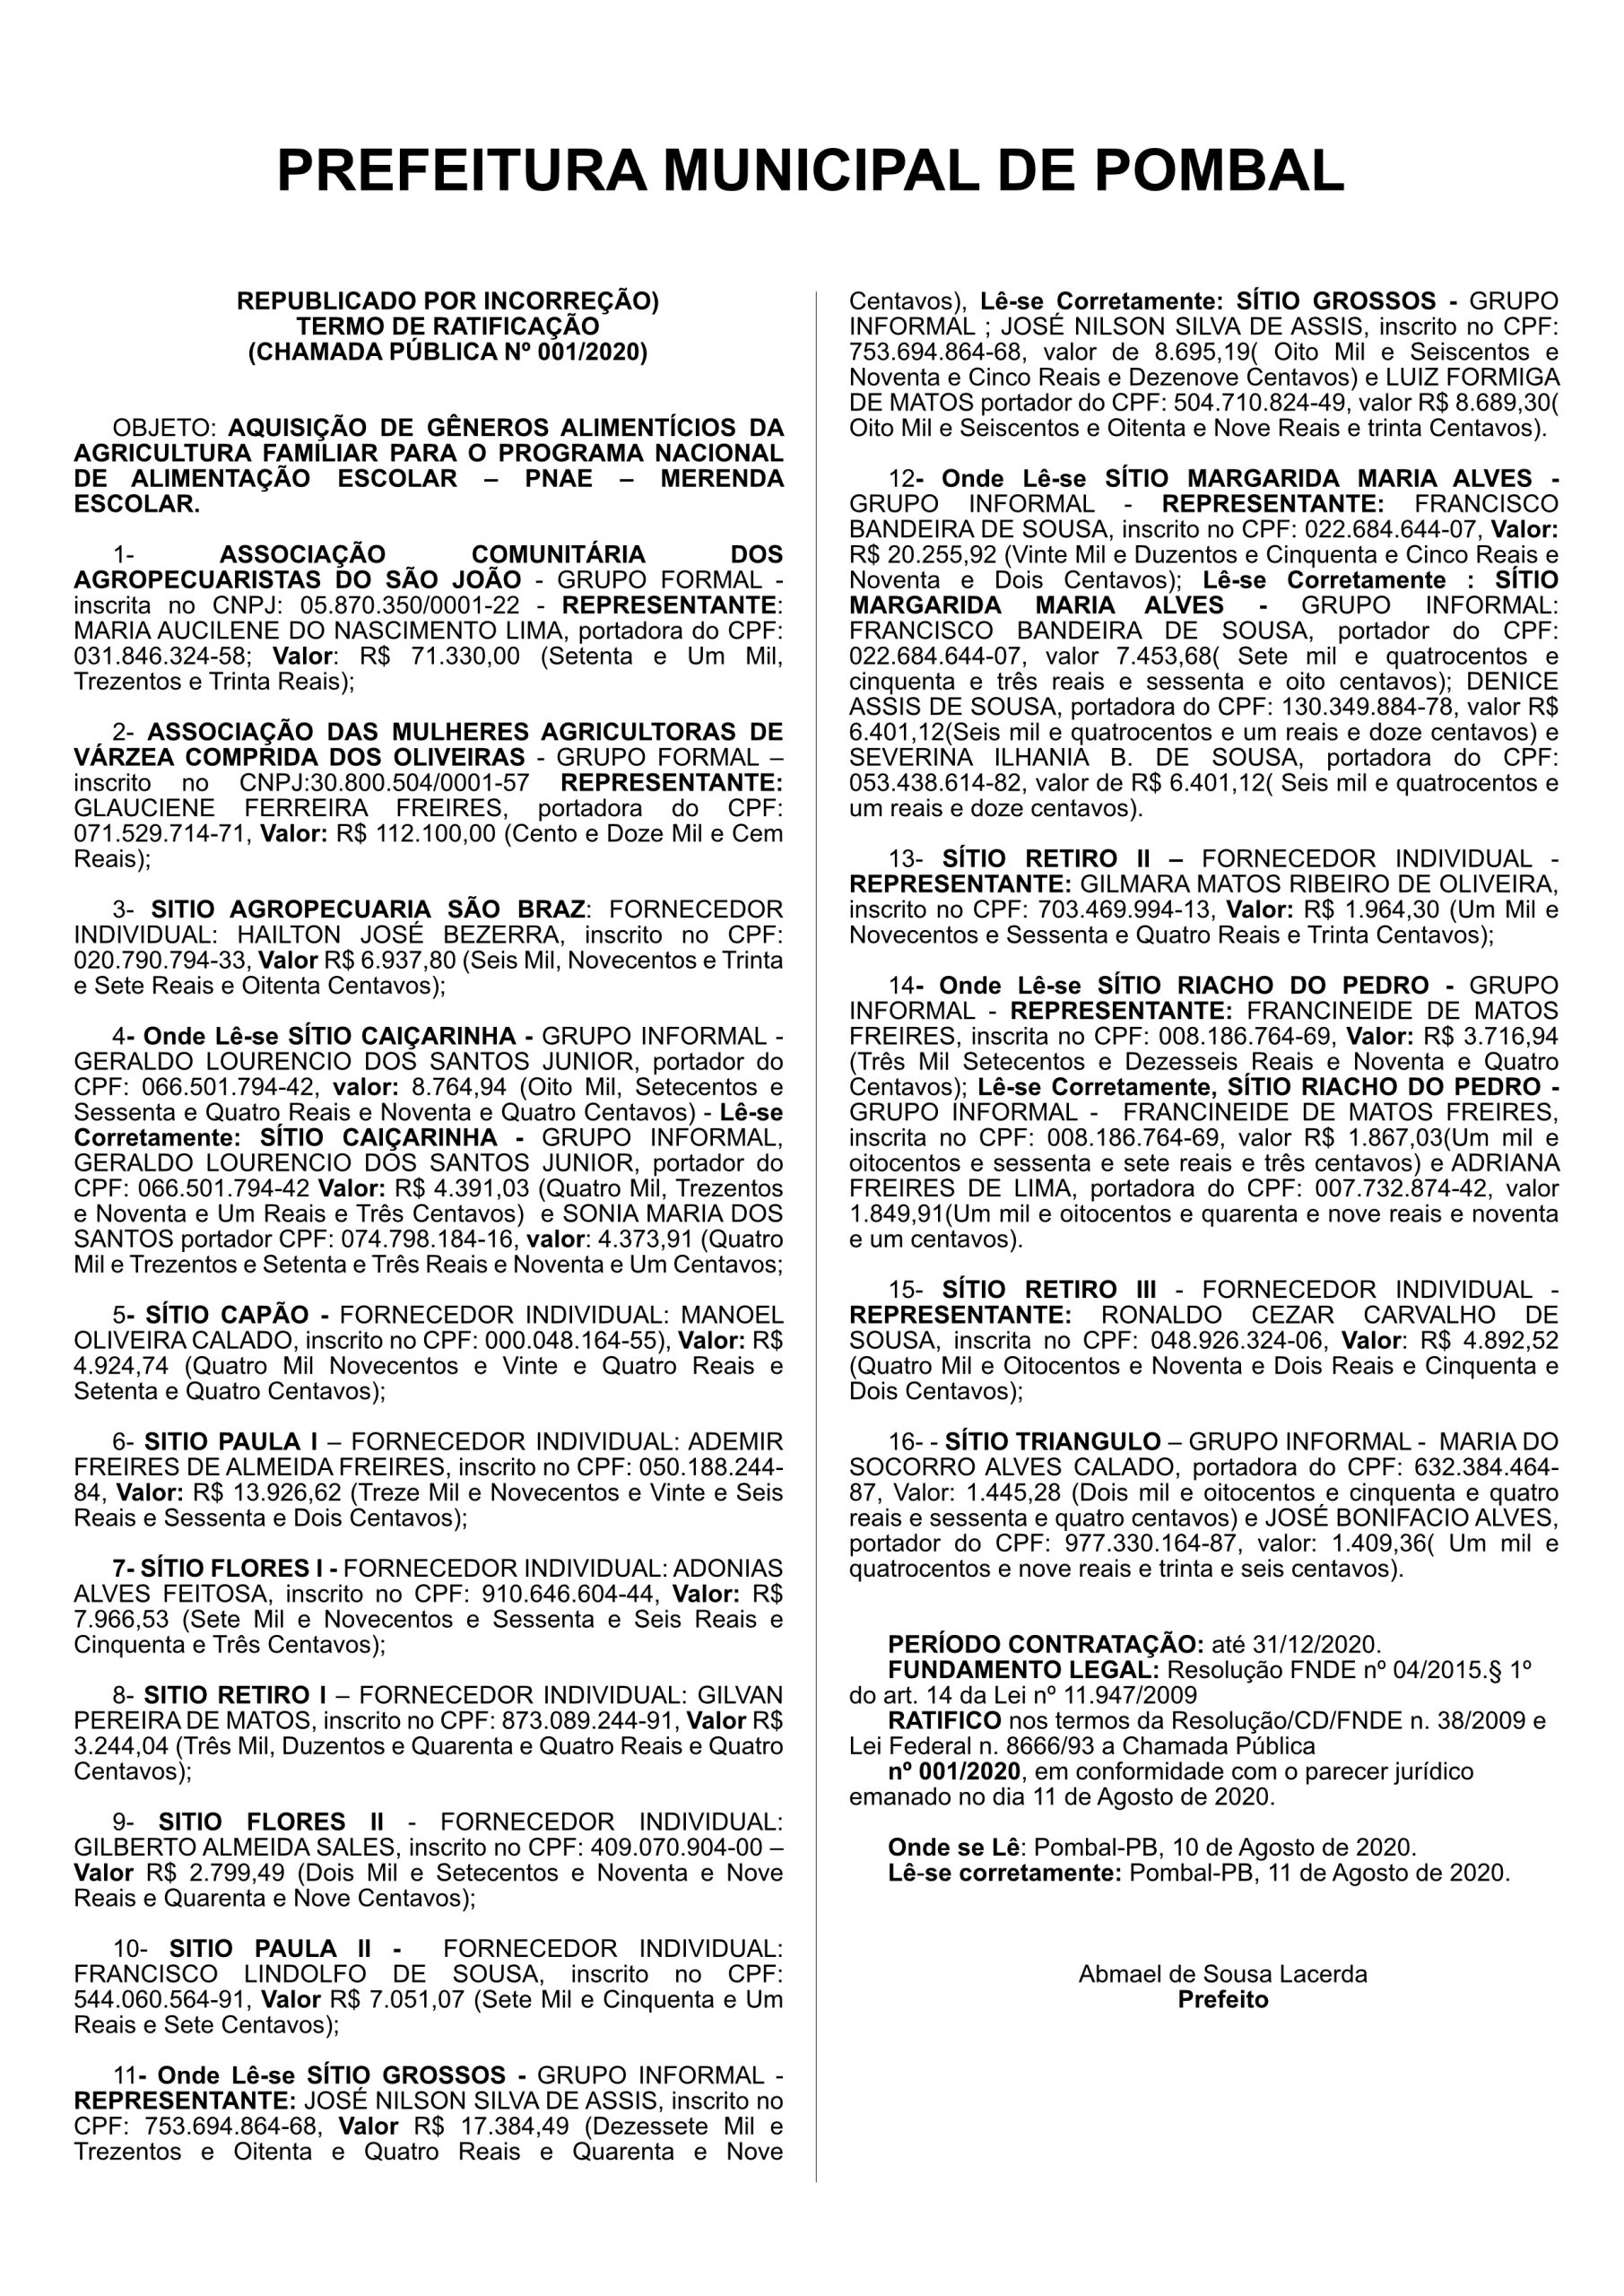 PREFEITURA DE POMBAL  (REPUBLICADO POR INCORREÇÃO) TERMO DE RATIFICAÇÃO (CHAMADA PÚBLICA Nº 001/2020)